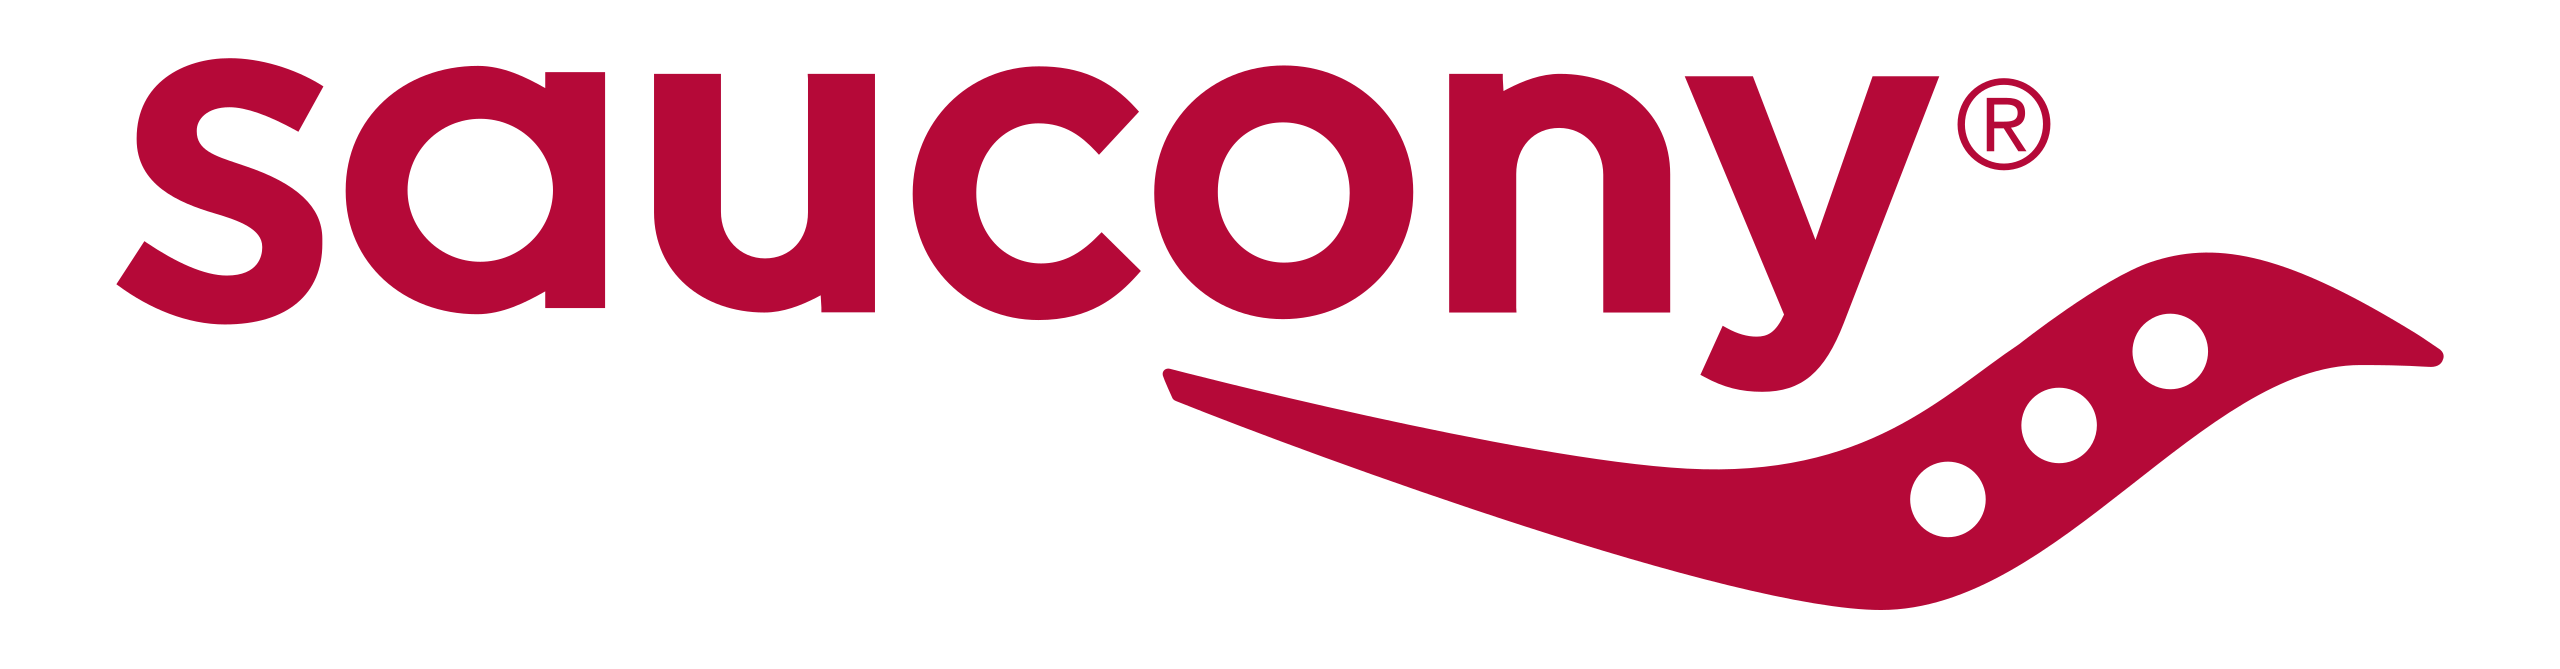 CODICE SCONTO Saucony - Promozioni Saucony - Sconti fino al 30%